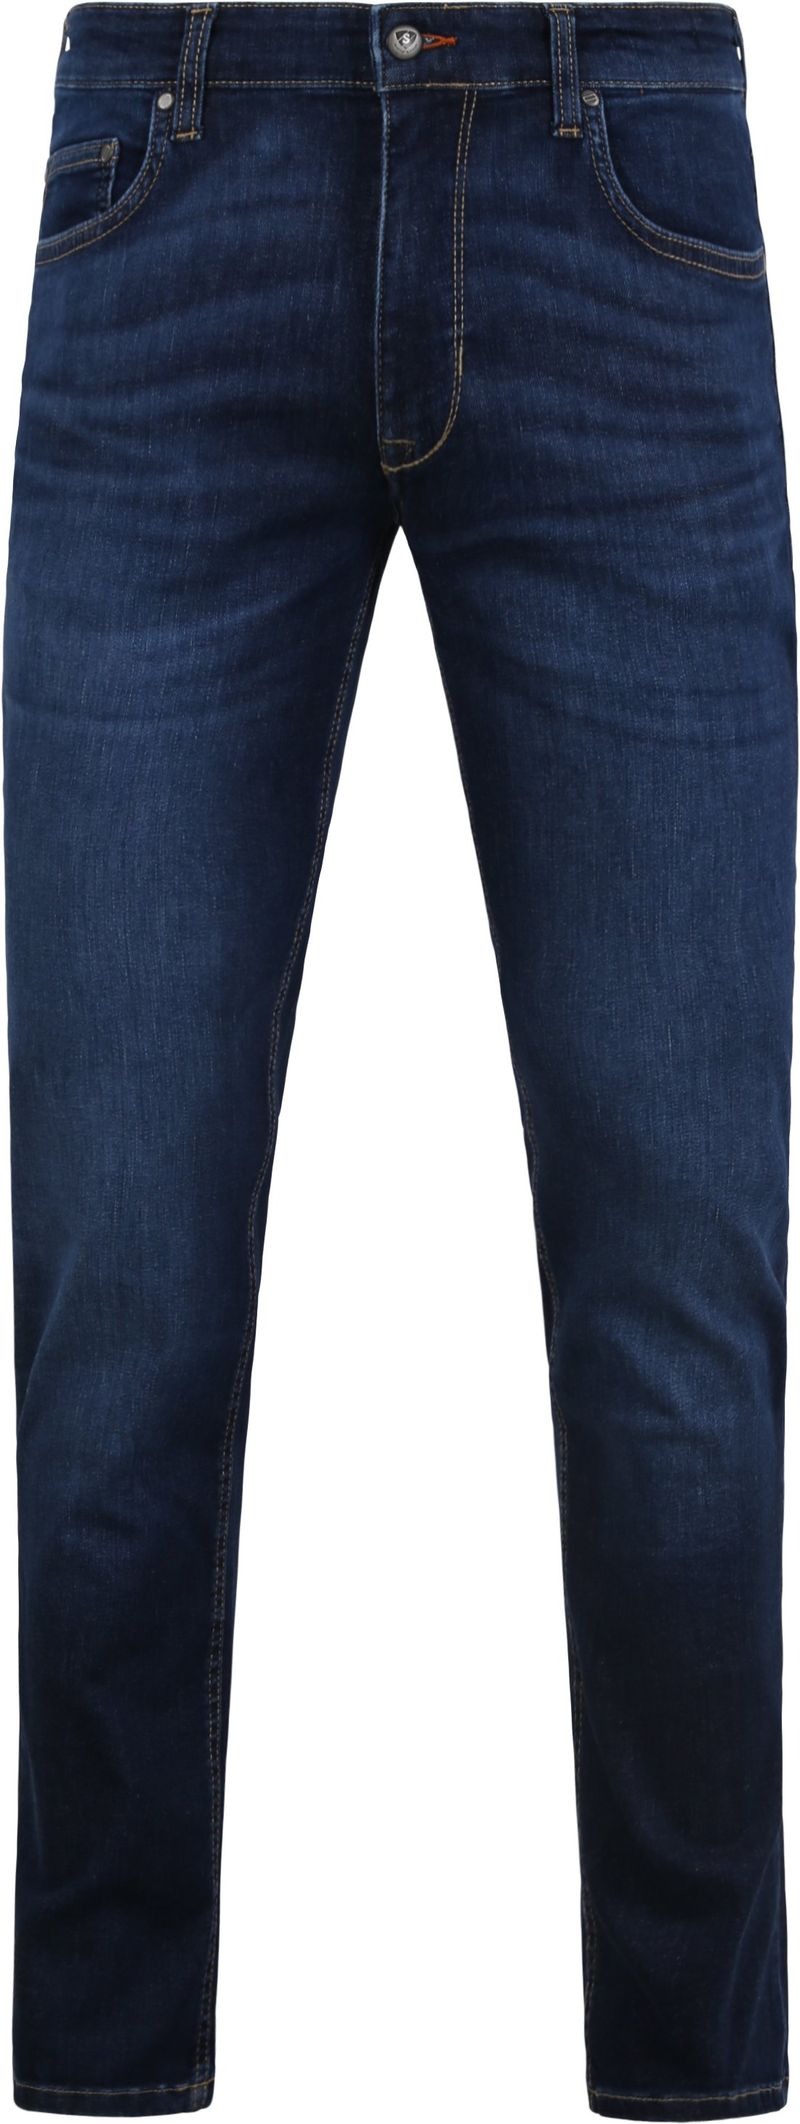 Suitable Jeans Navy - Größe W 31 - L 34 von Suitable